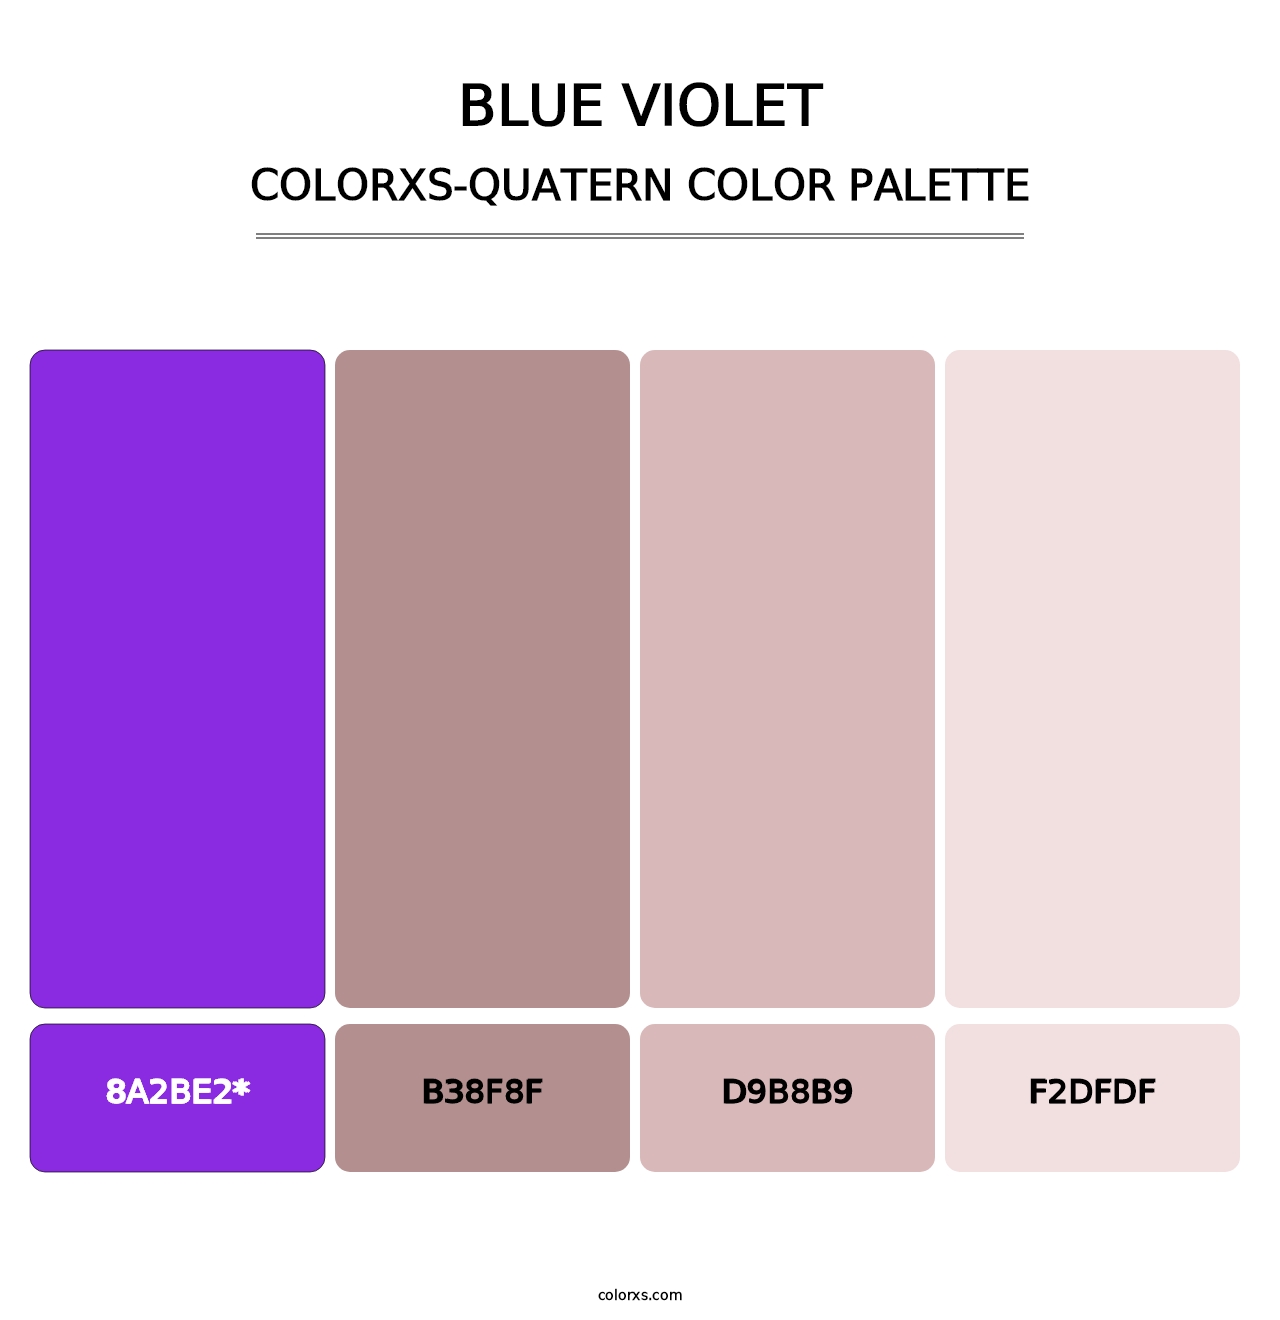 Blue Violet - Colorxs Quatern Palette